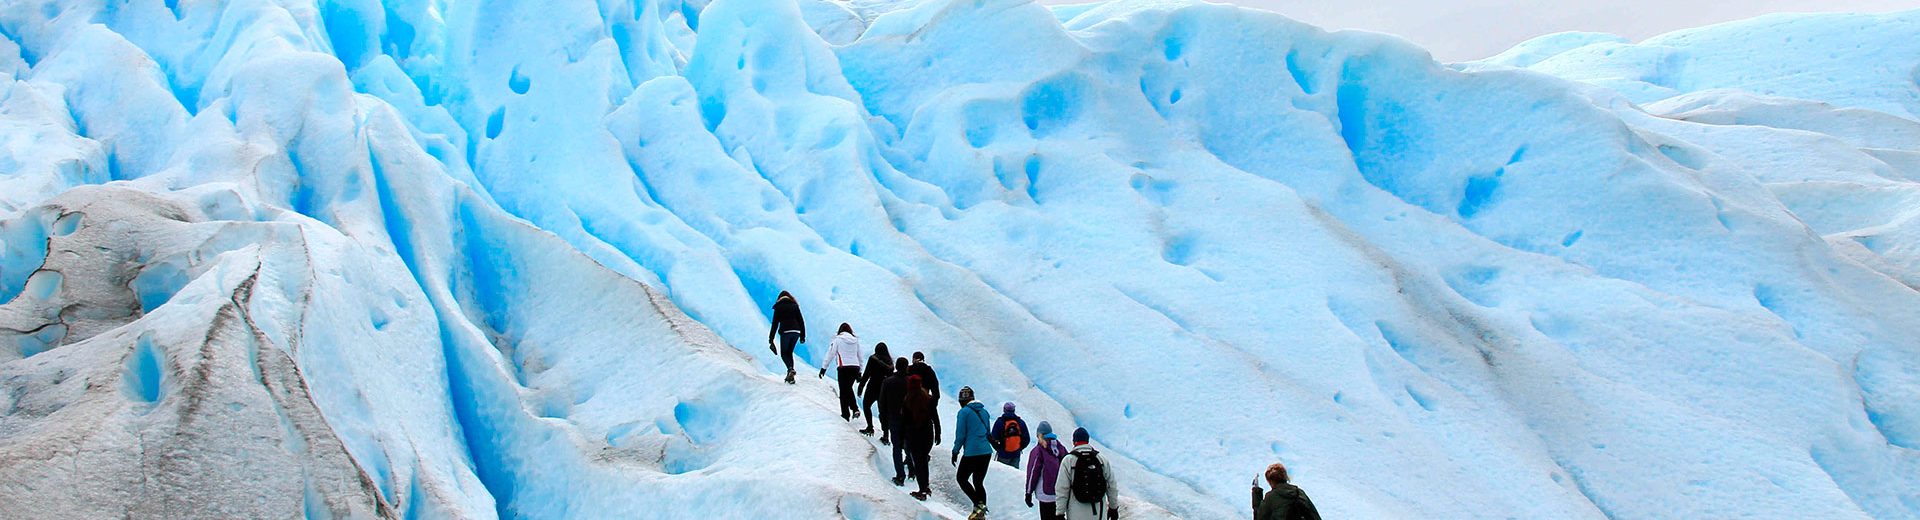 Mini trekking em Perito Moreno: uma ventura para conhecer bem de perto o Glaciar